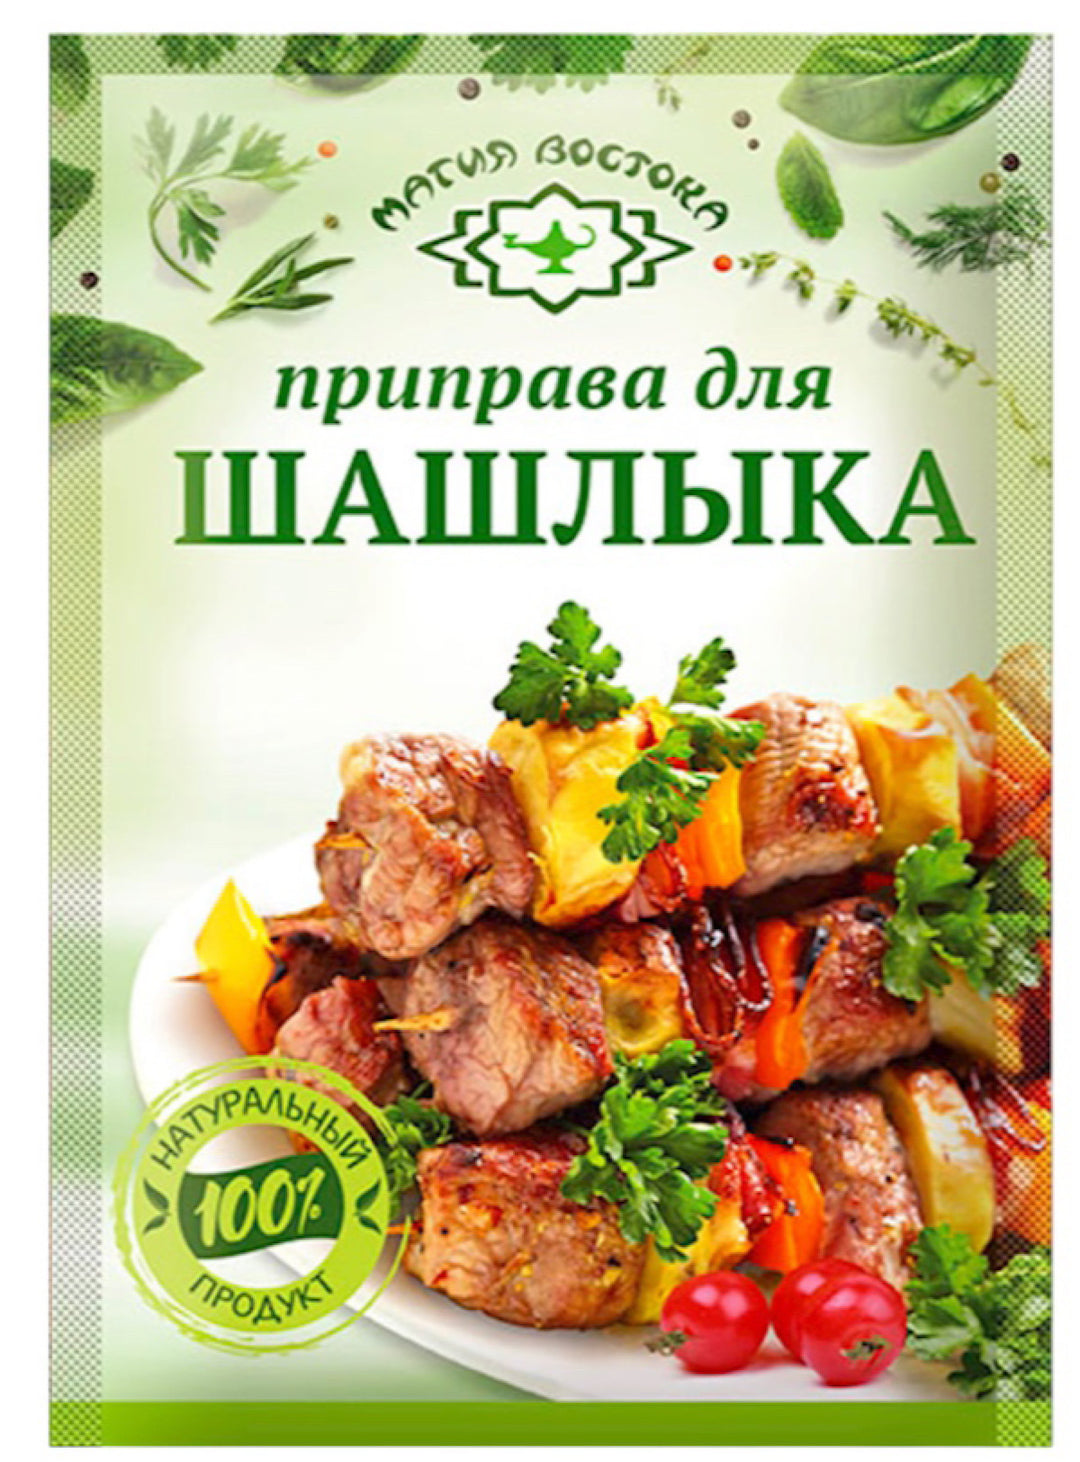 Shashlyk Spices - Magiya Vostoka - 15g